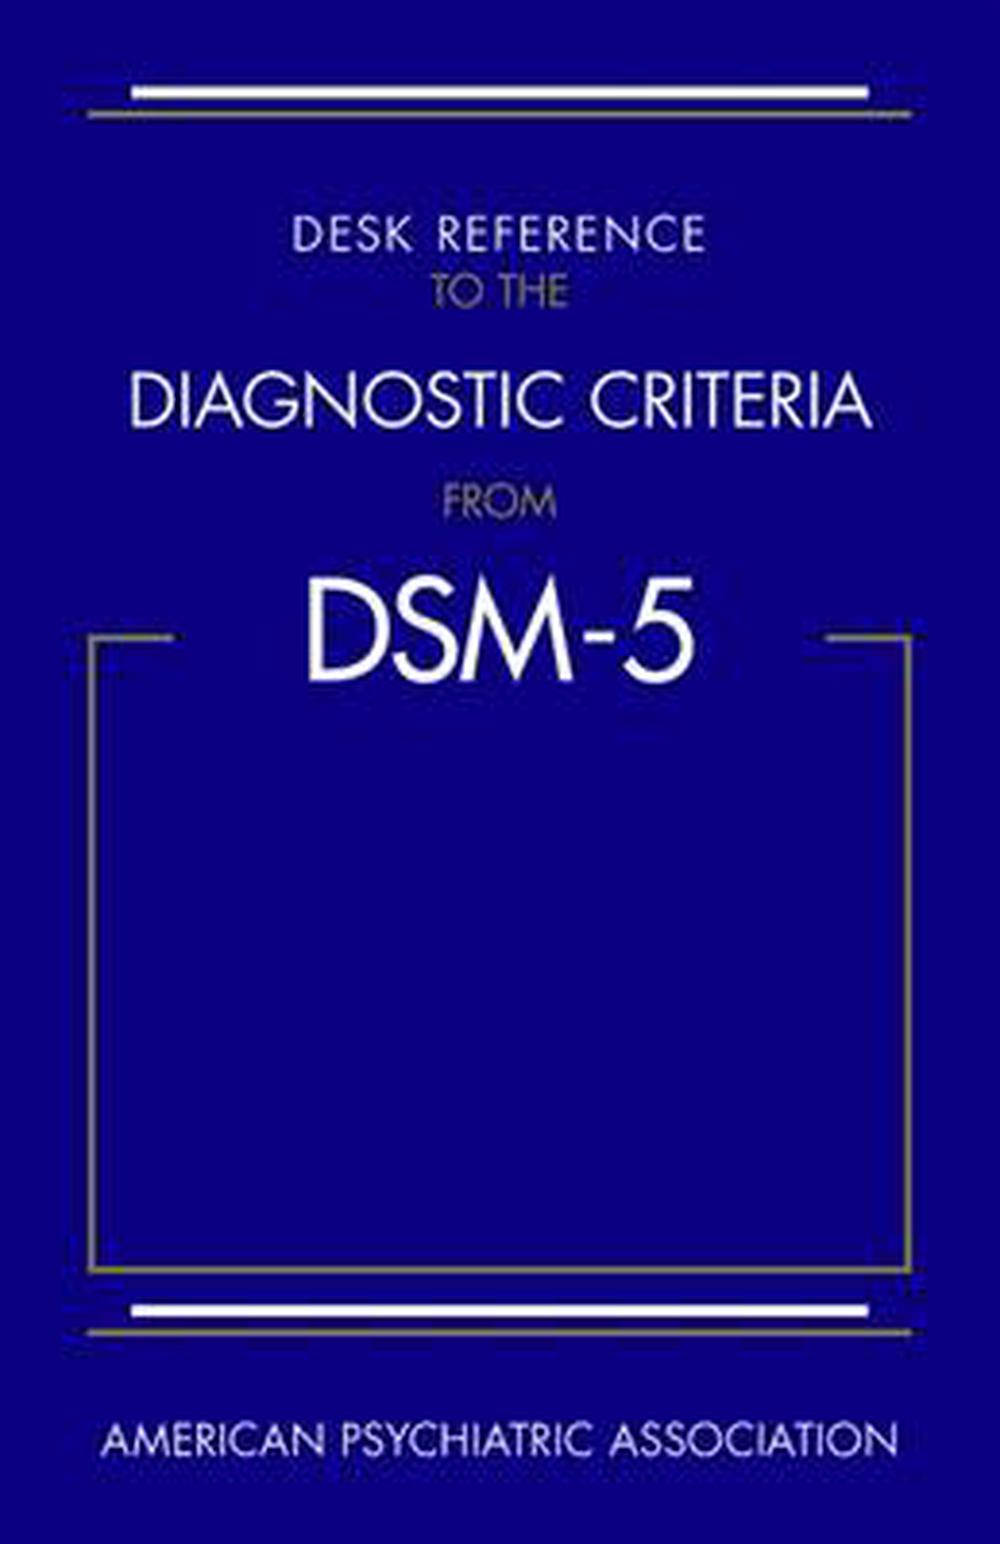 dsm 5 mstptsd criteria